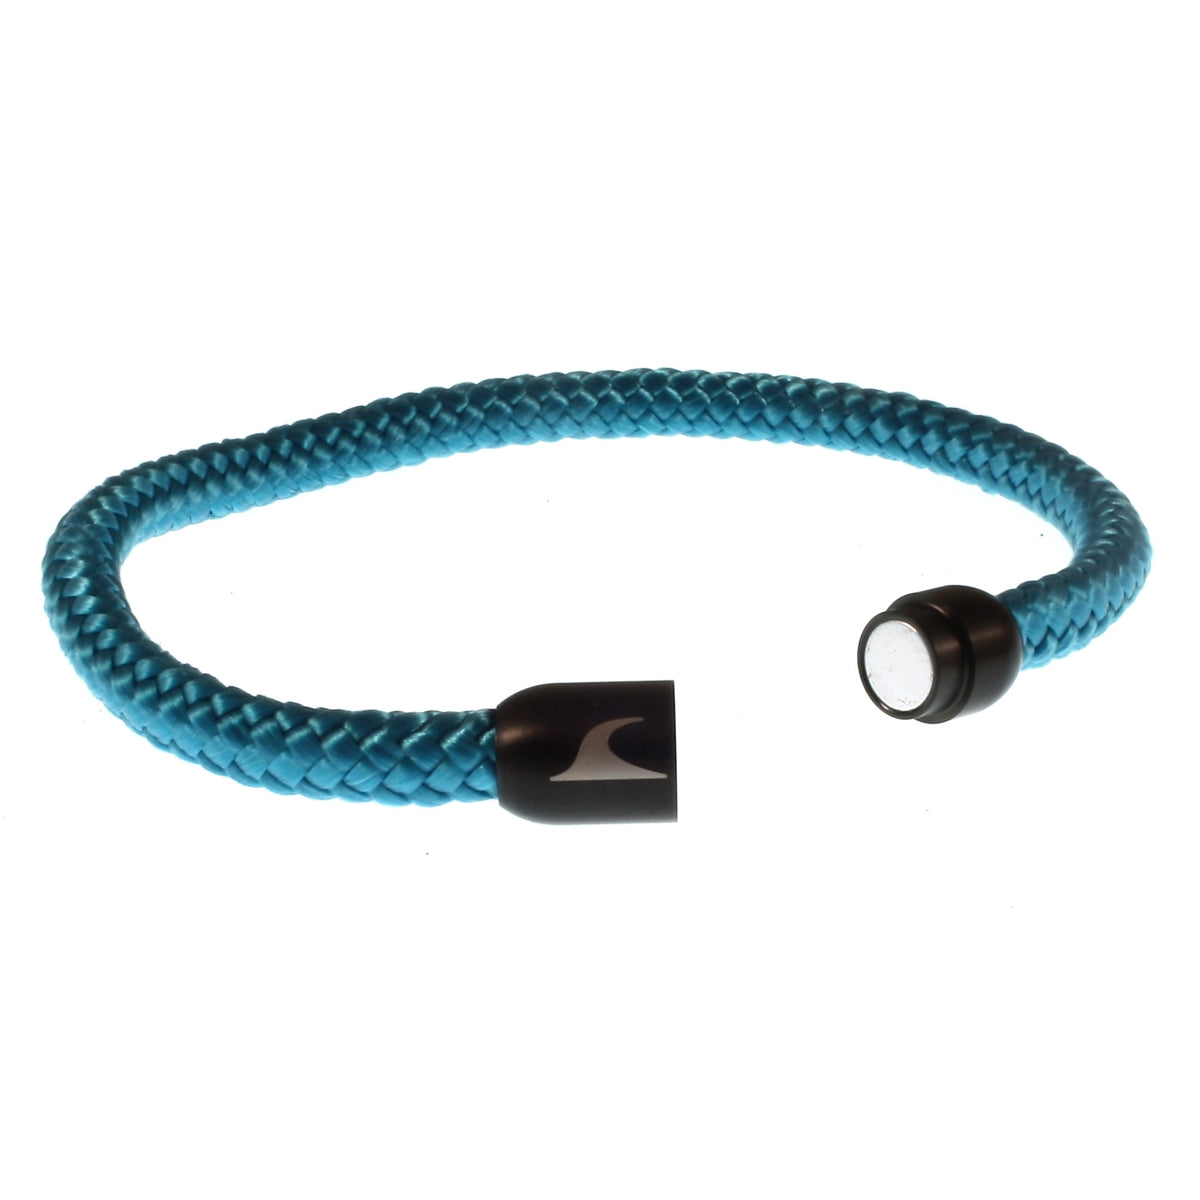 Herren-segeltau-armband-damen-sylt-blau-schwarz-geflochten-Edelstahlverschluss-offen-wavepirate-shop-st